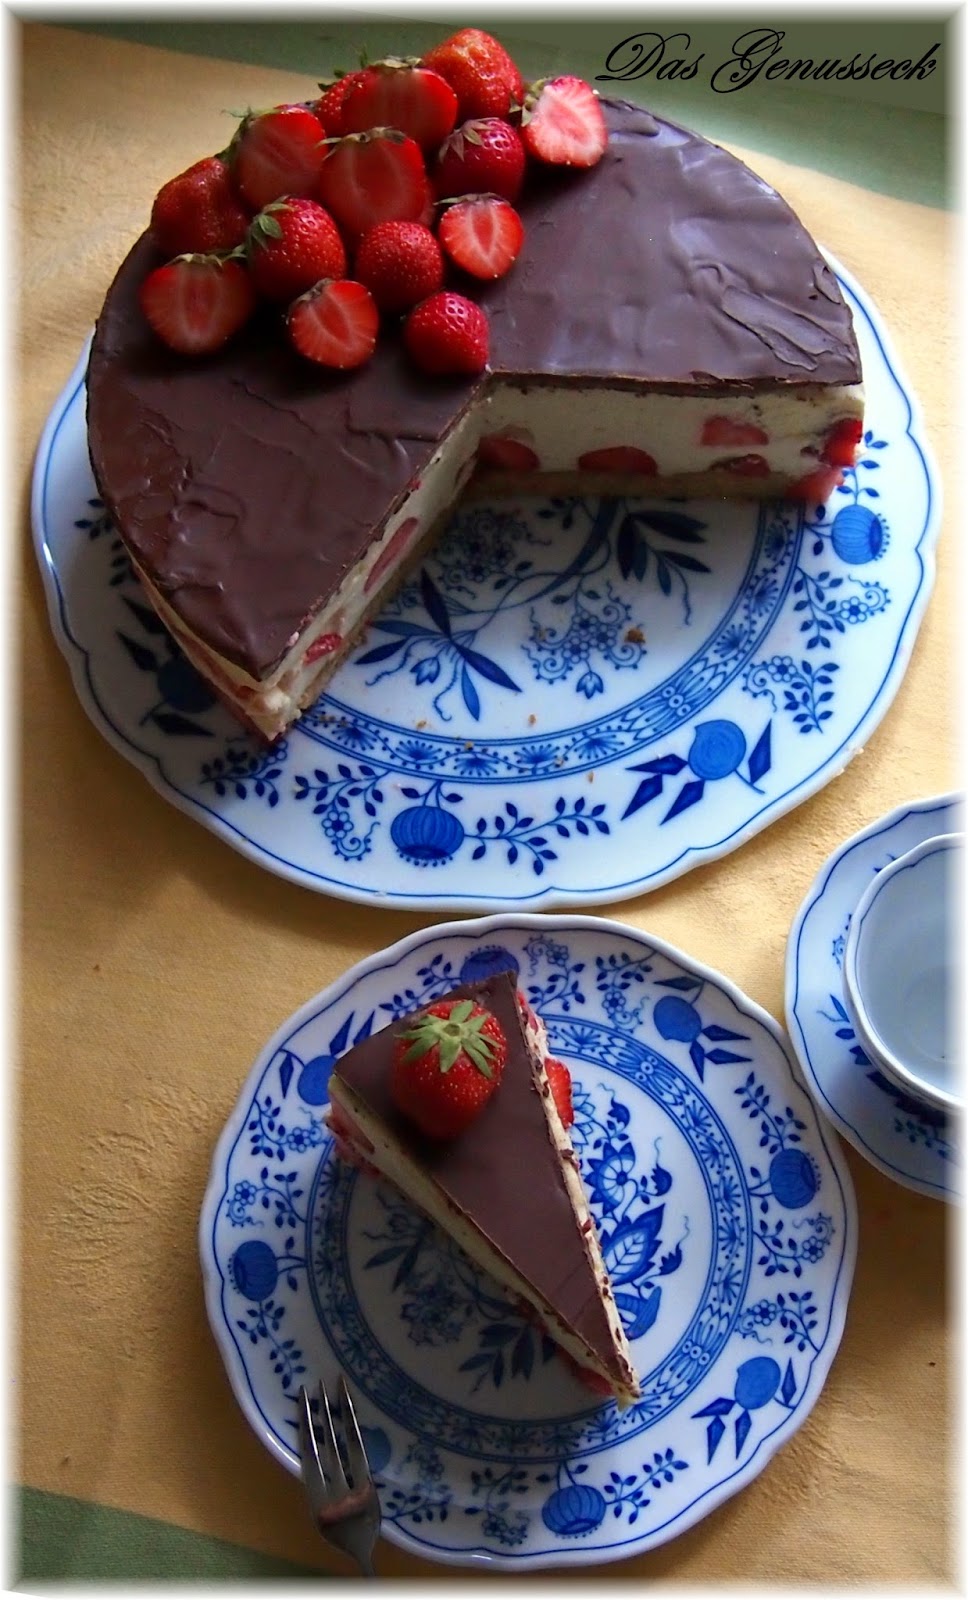 Das Genusseck: Erdbeer-Vanille-Torte mit Schokoladen-Marzipan-Decke